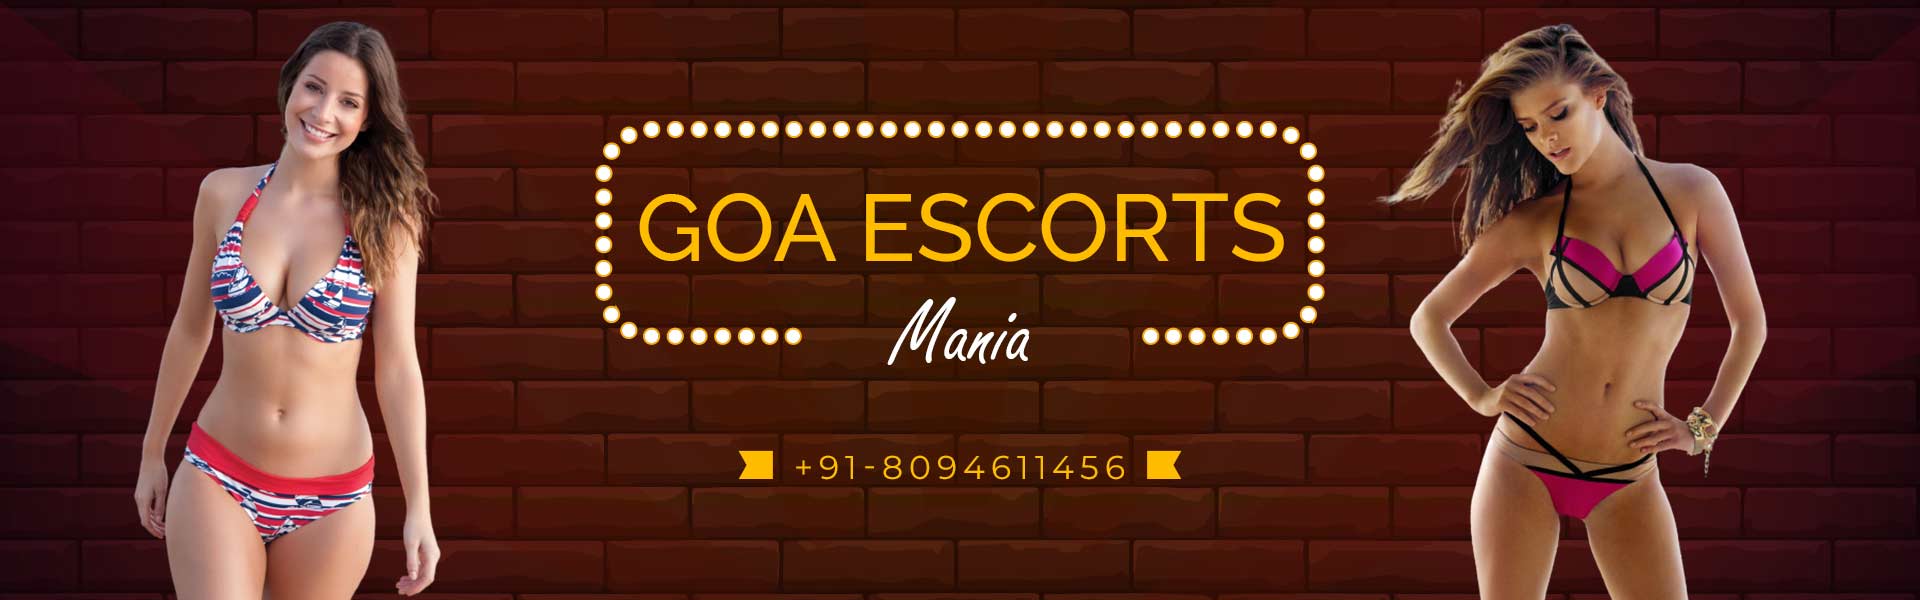 Goa Escorts Gallery